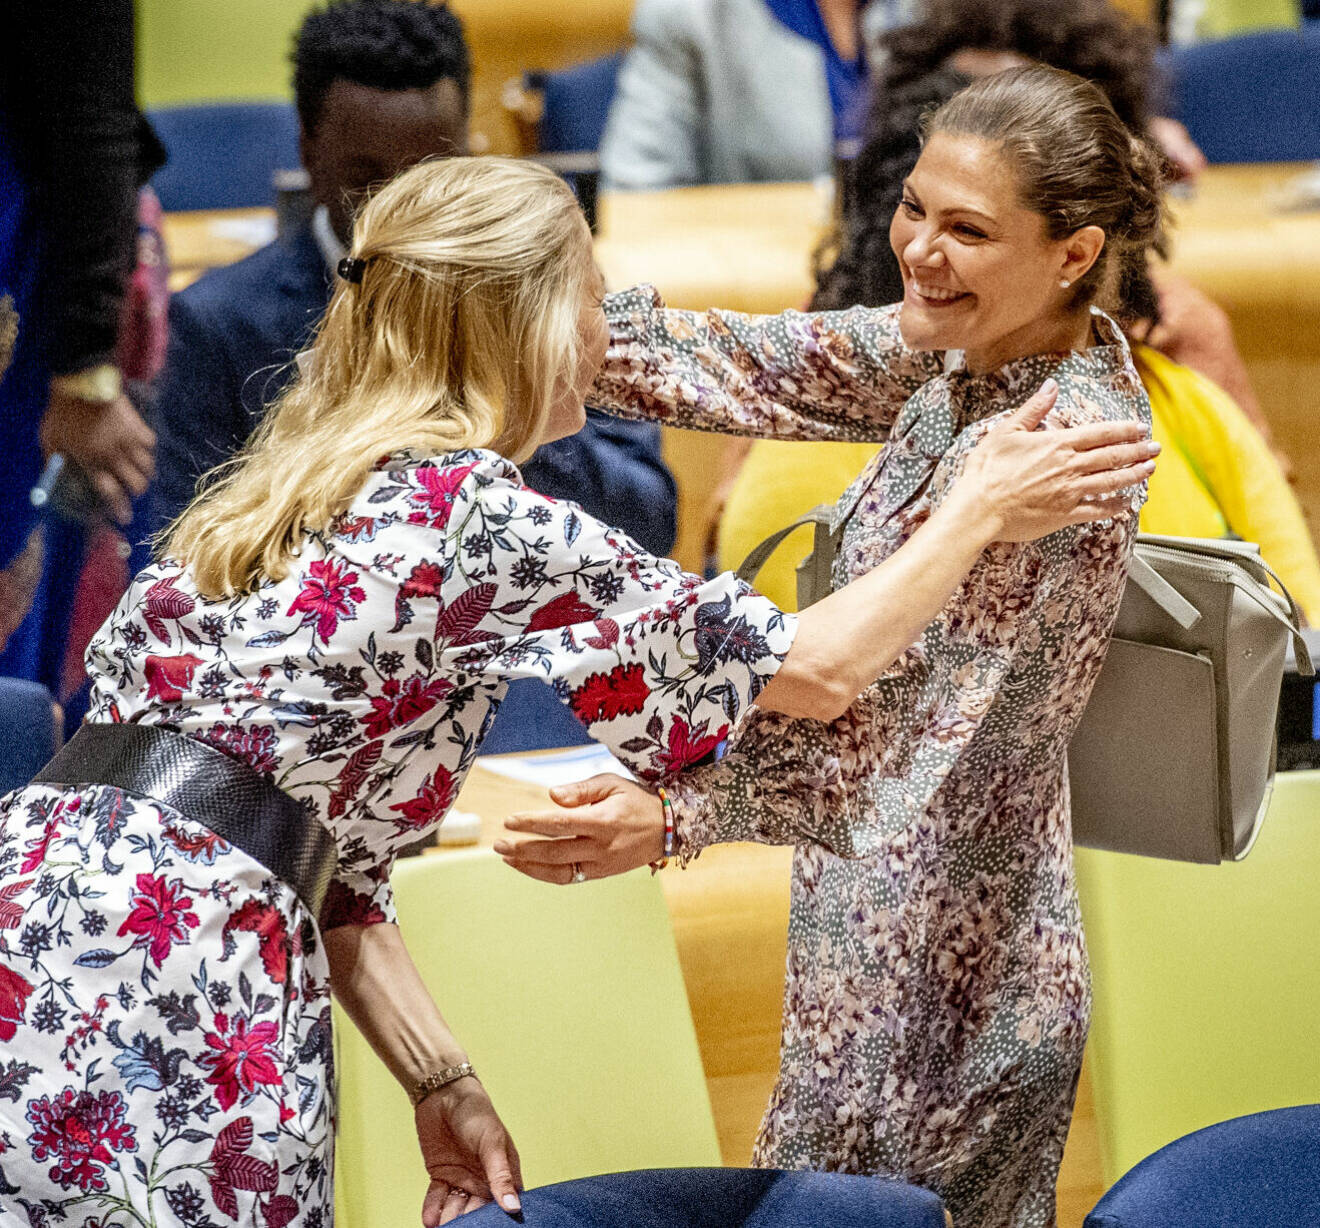 Prinsessan Mabel och Kronprinsessan Victoria i FN 2018